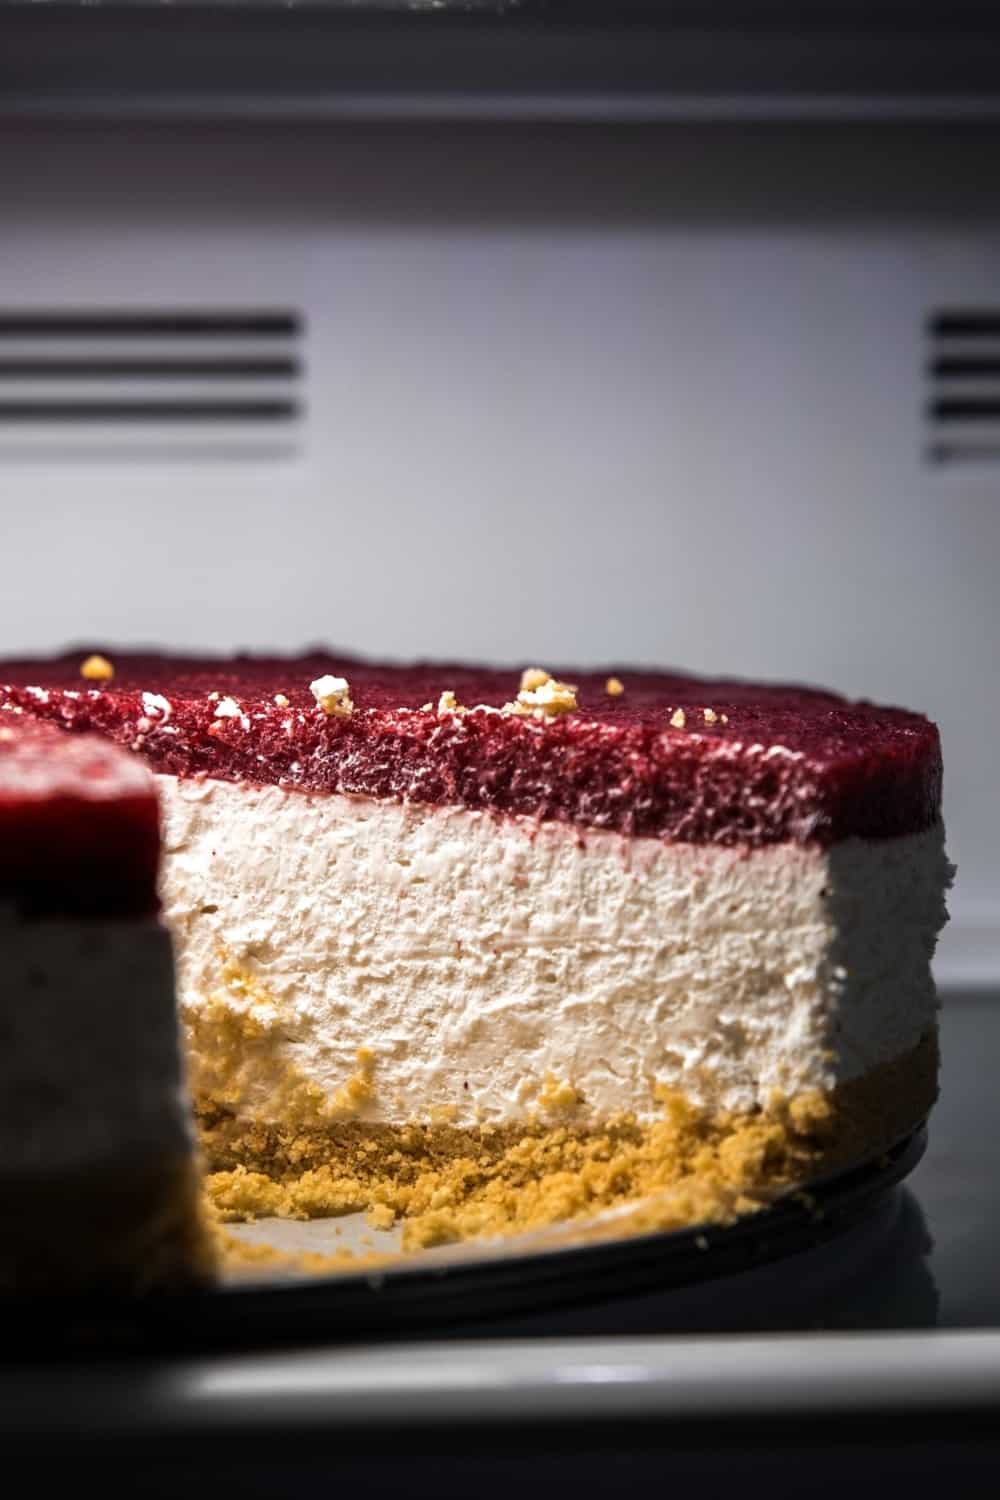 cheesecake inside a fridge